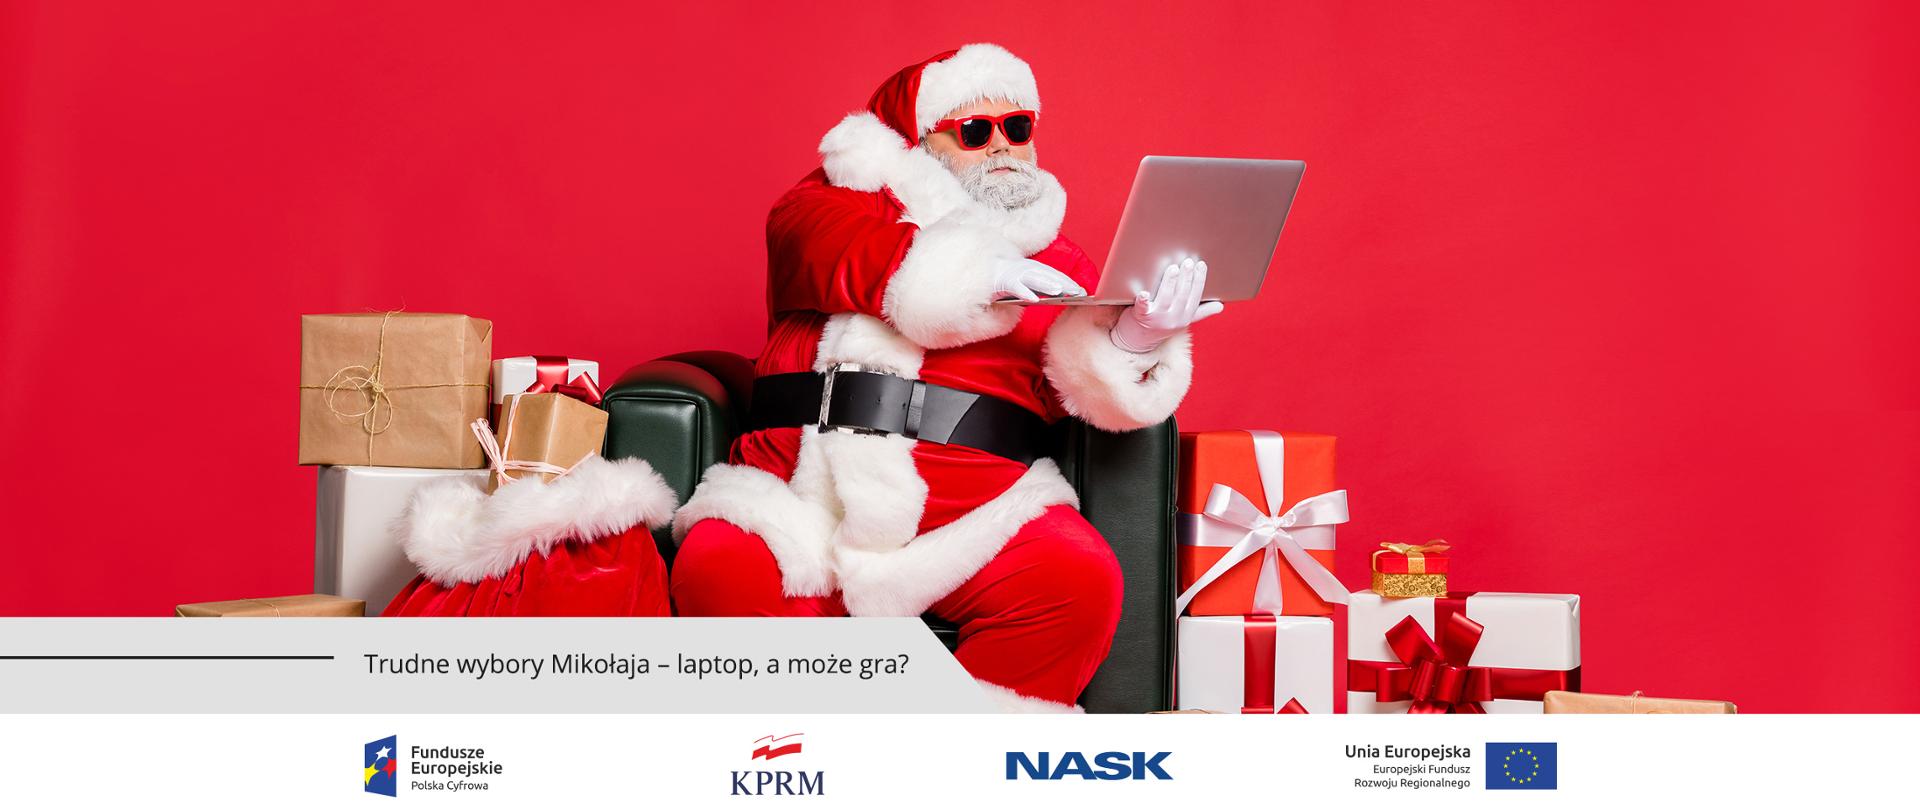 Mężczyzna w stroju św. Mikołaja, siedzi na czarnym, skórzanym fotelu, na oczach ma okulary przeciwsłoneczne, a w rękach trzyma laptopa. Wokół niego leżą zapakowane prezenty.